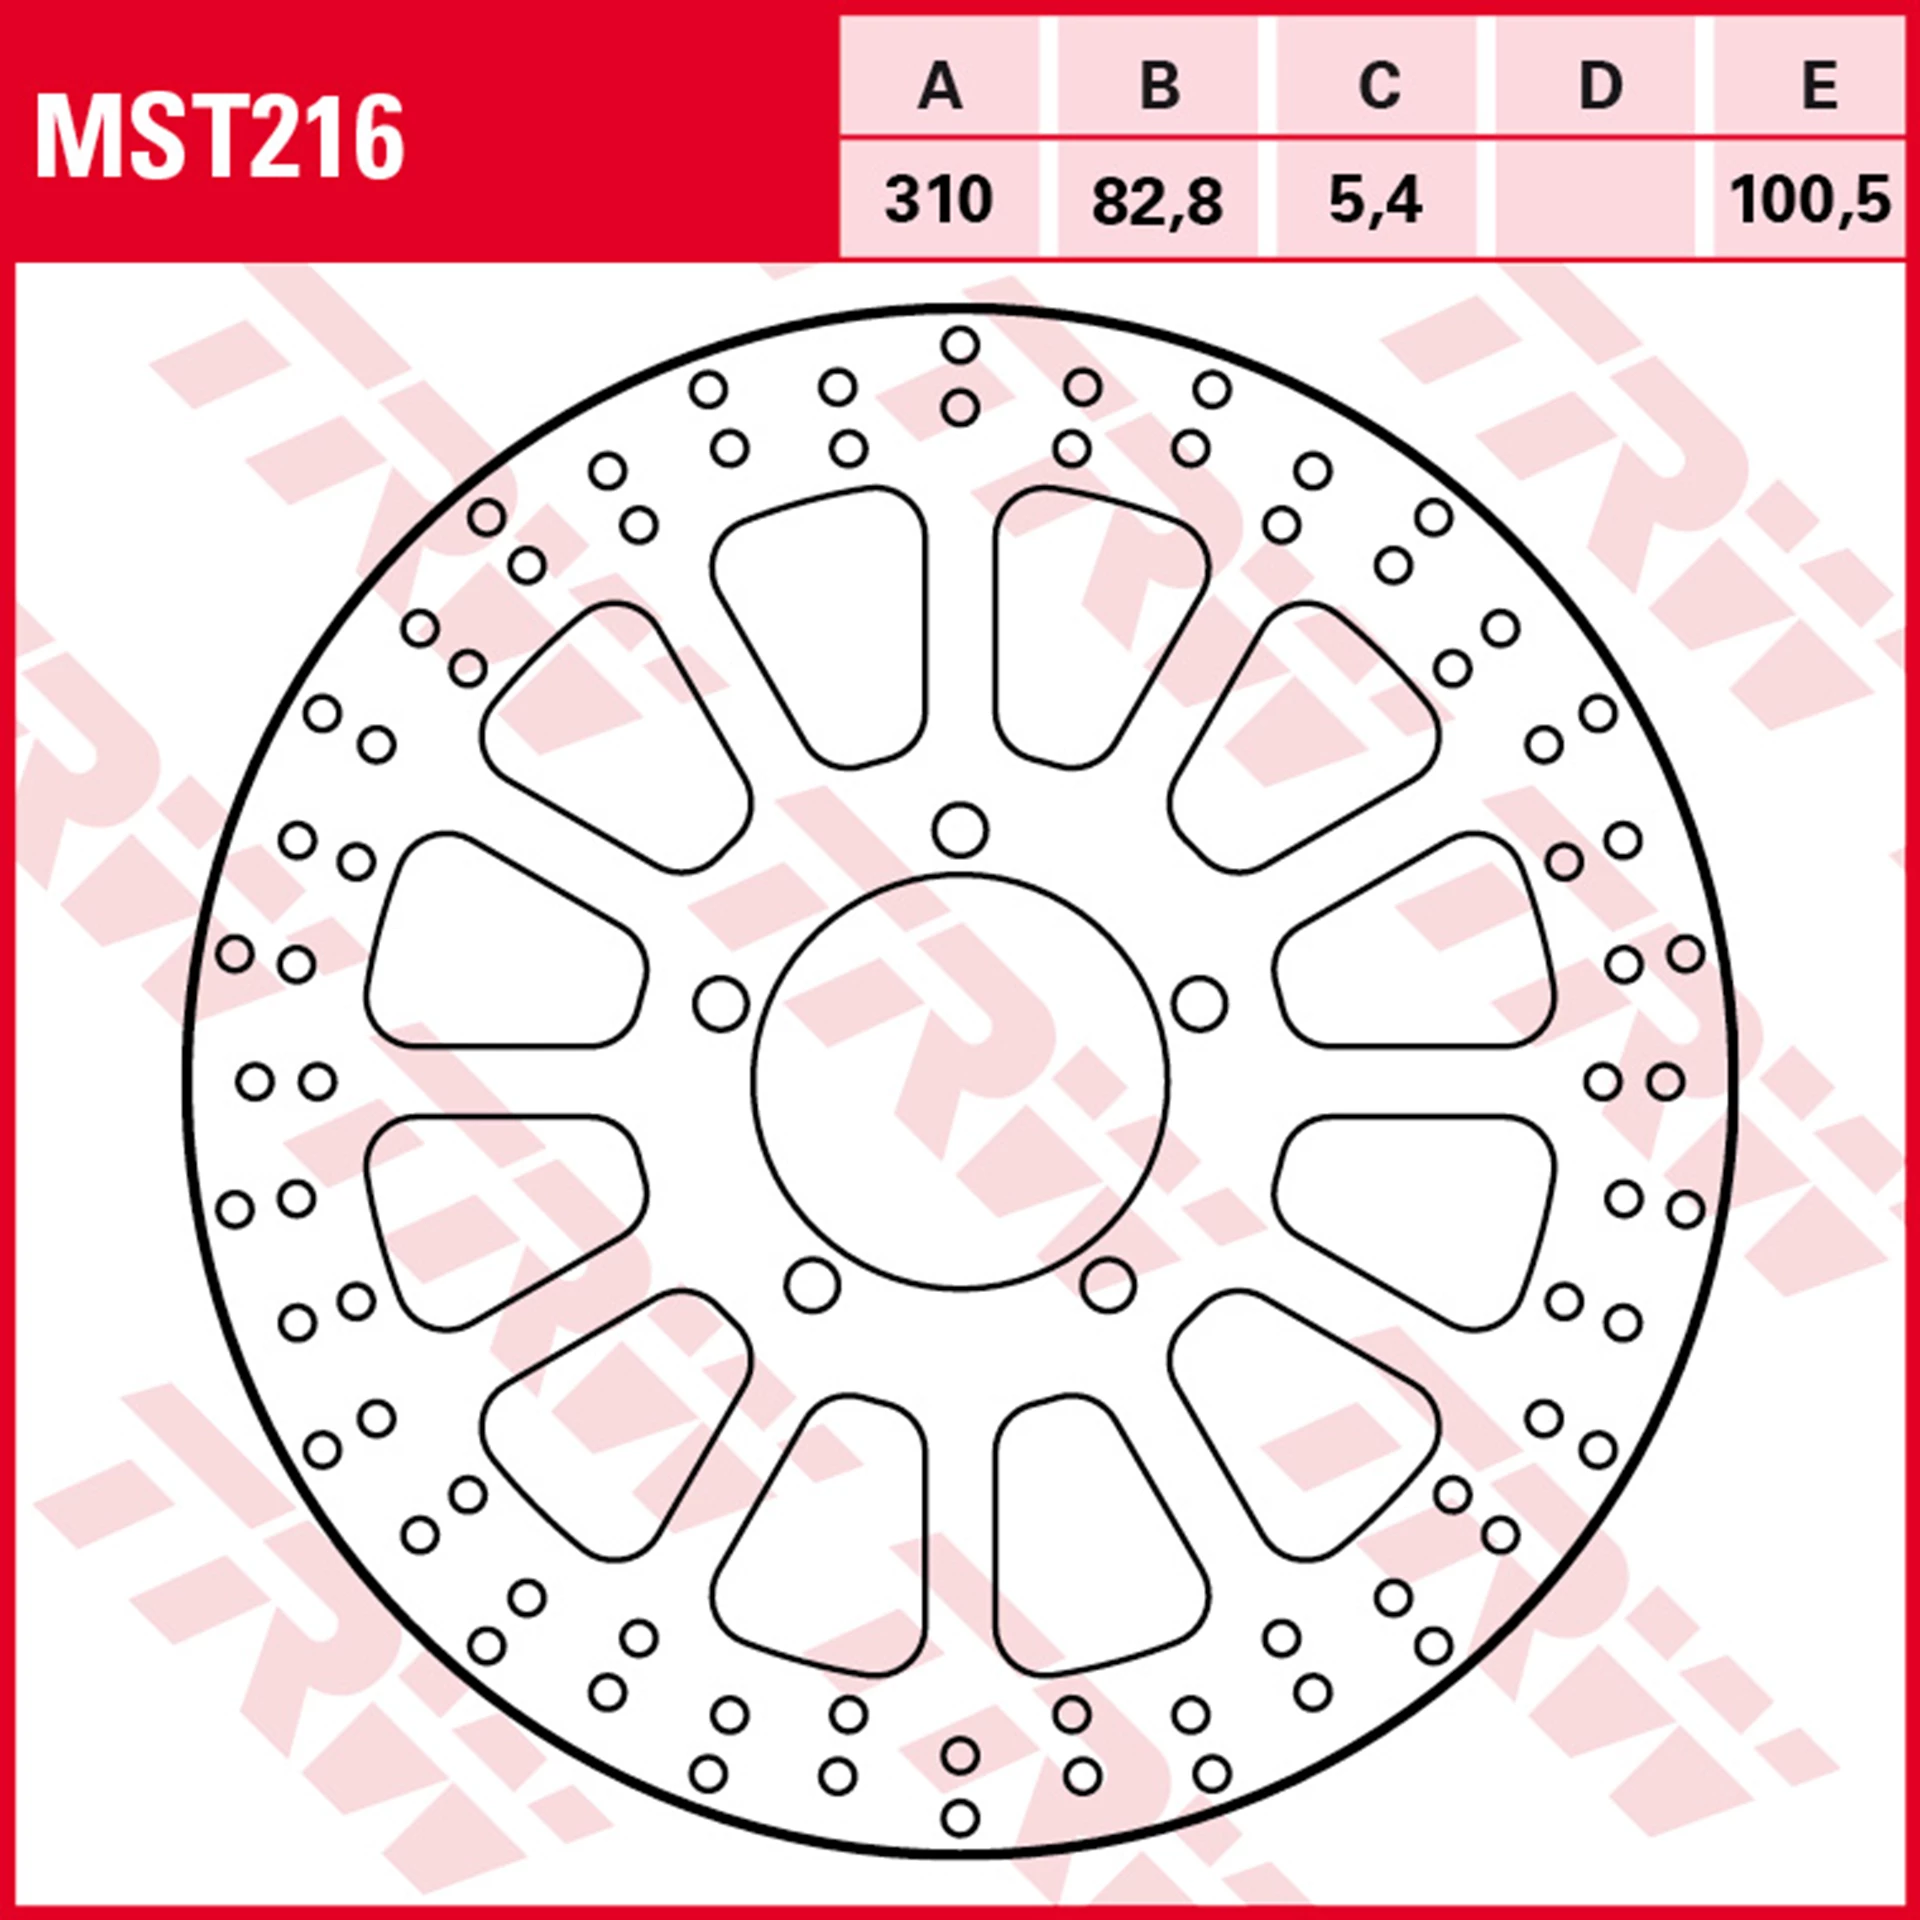 MST216